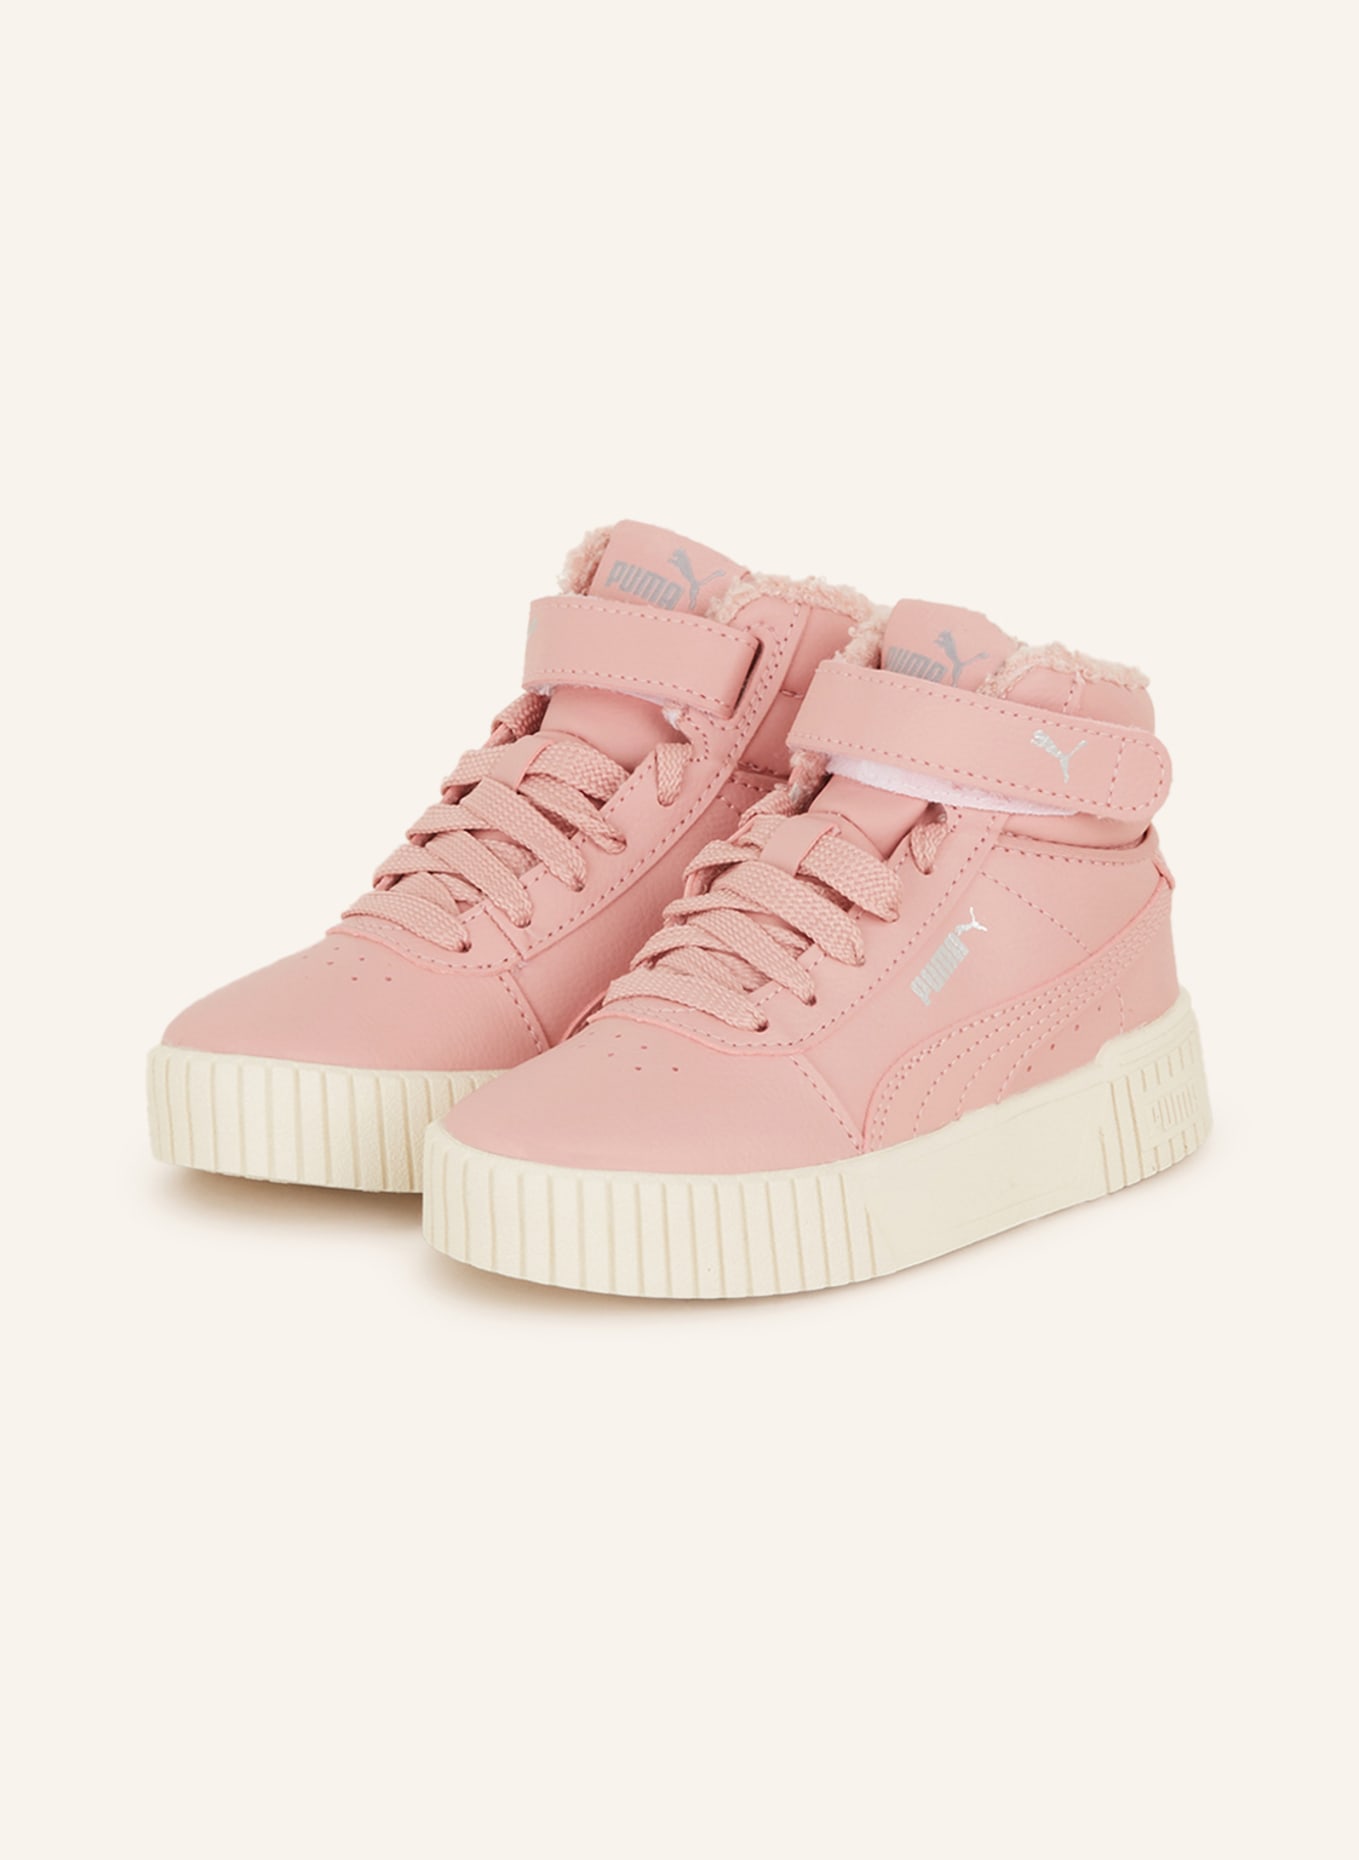 PUMA Hightop-Sneaker CARINA in pink 2.0